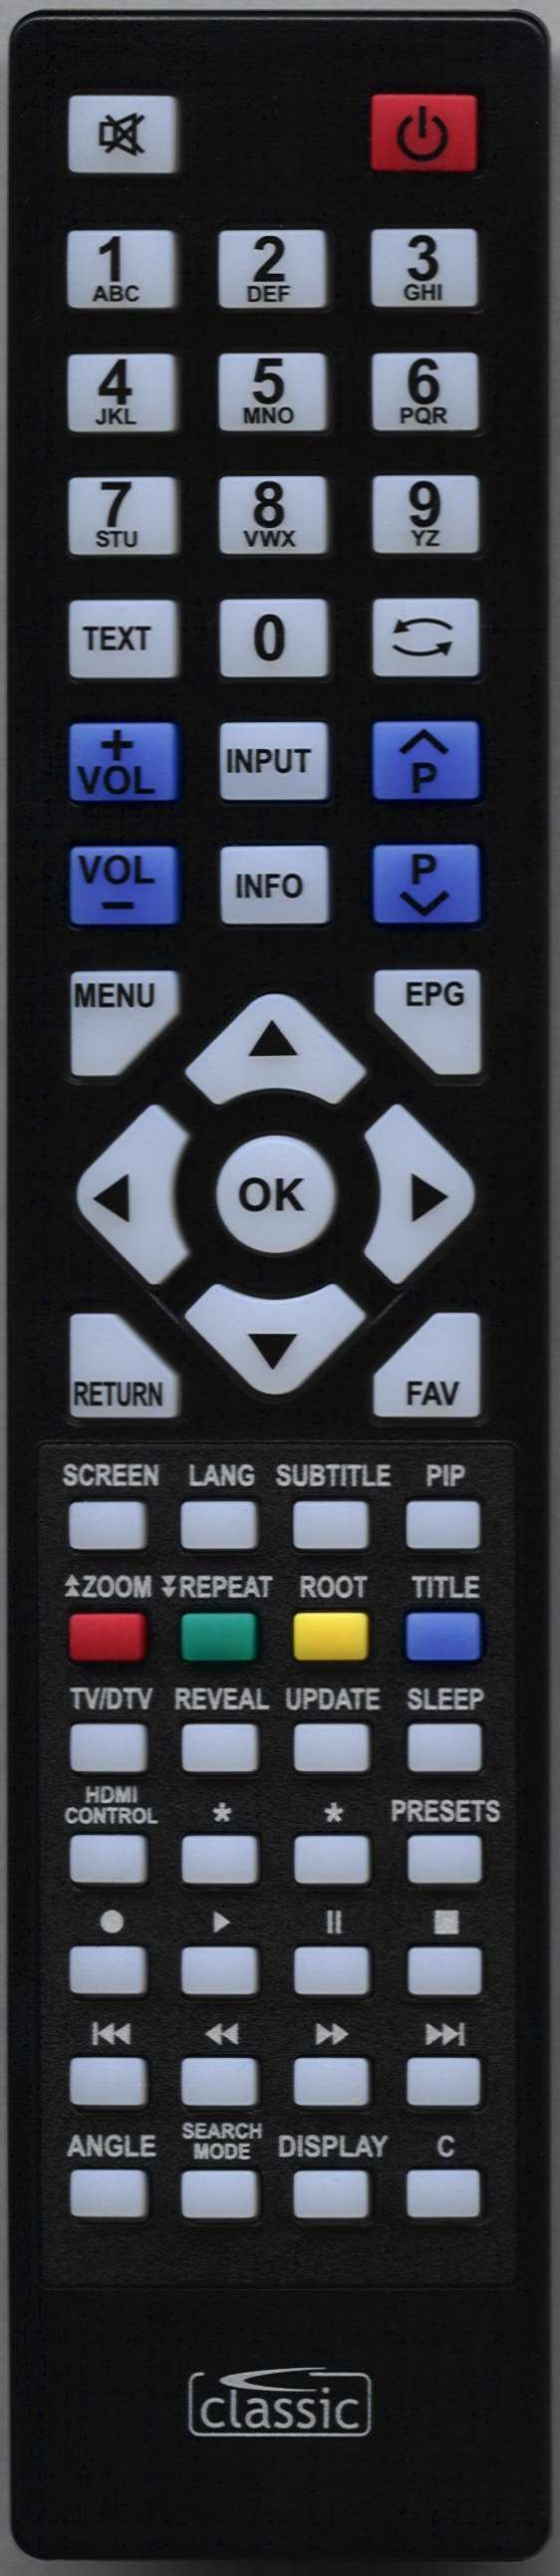 LUXOR HD19822D Remote Control Alternative